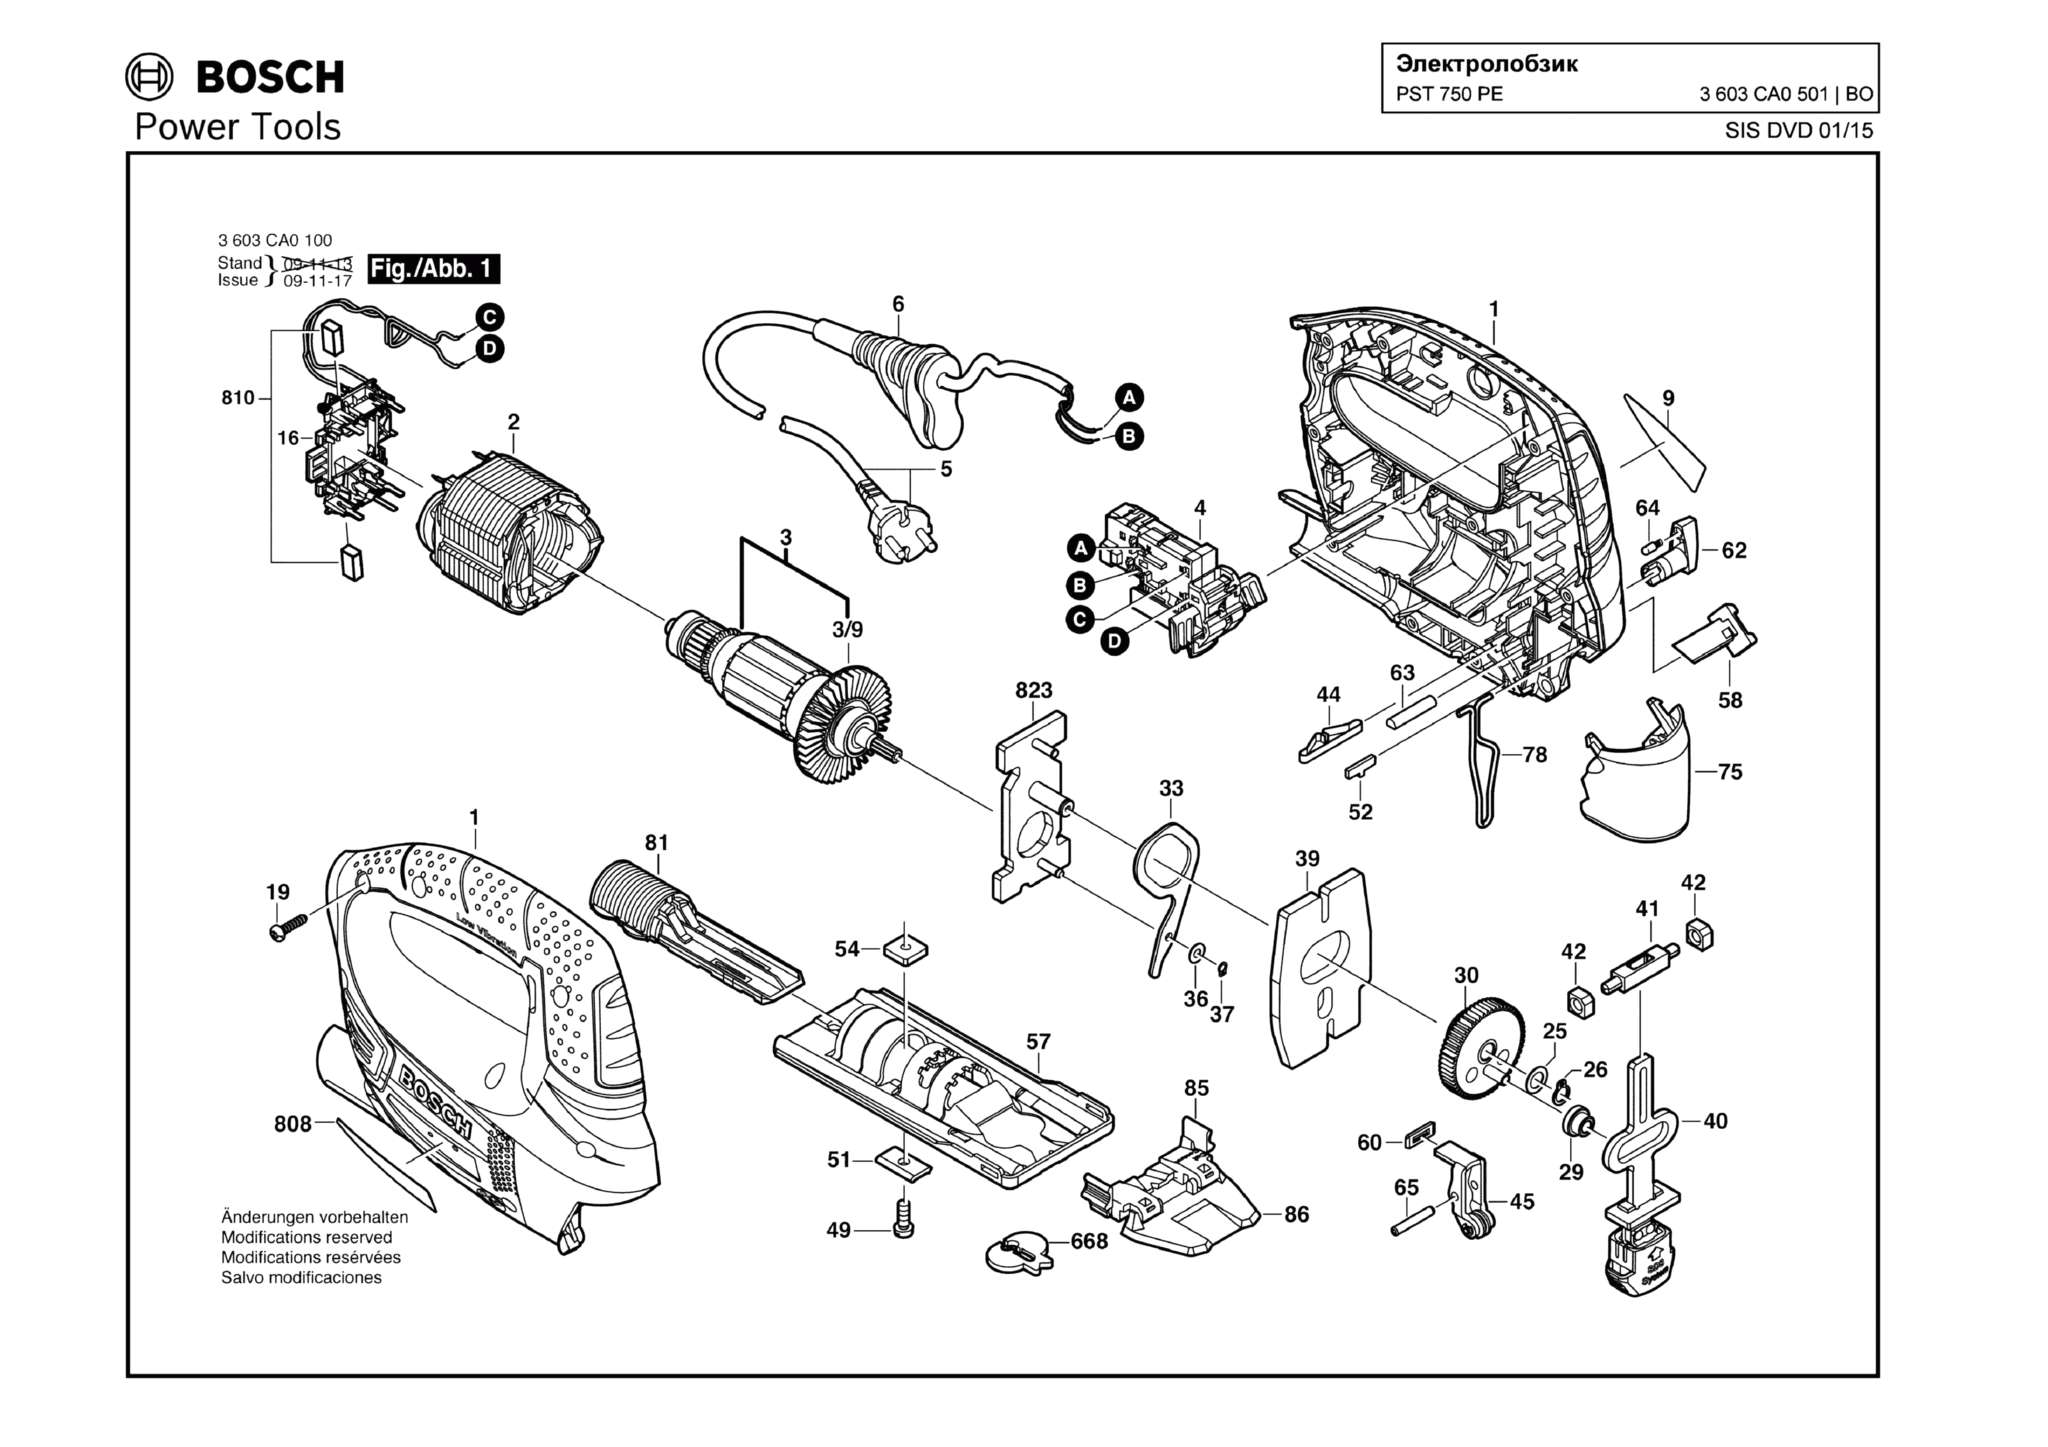 Запчасти, схема и деталировка Bosch PST 750 PE (ТИП 3603CA0501)